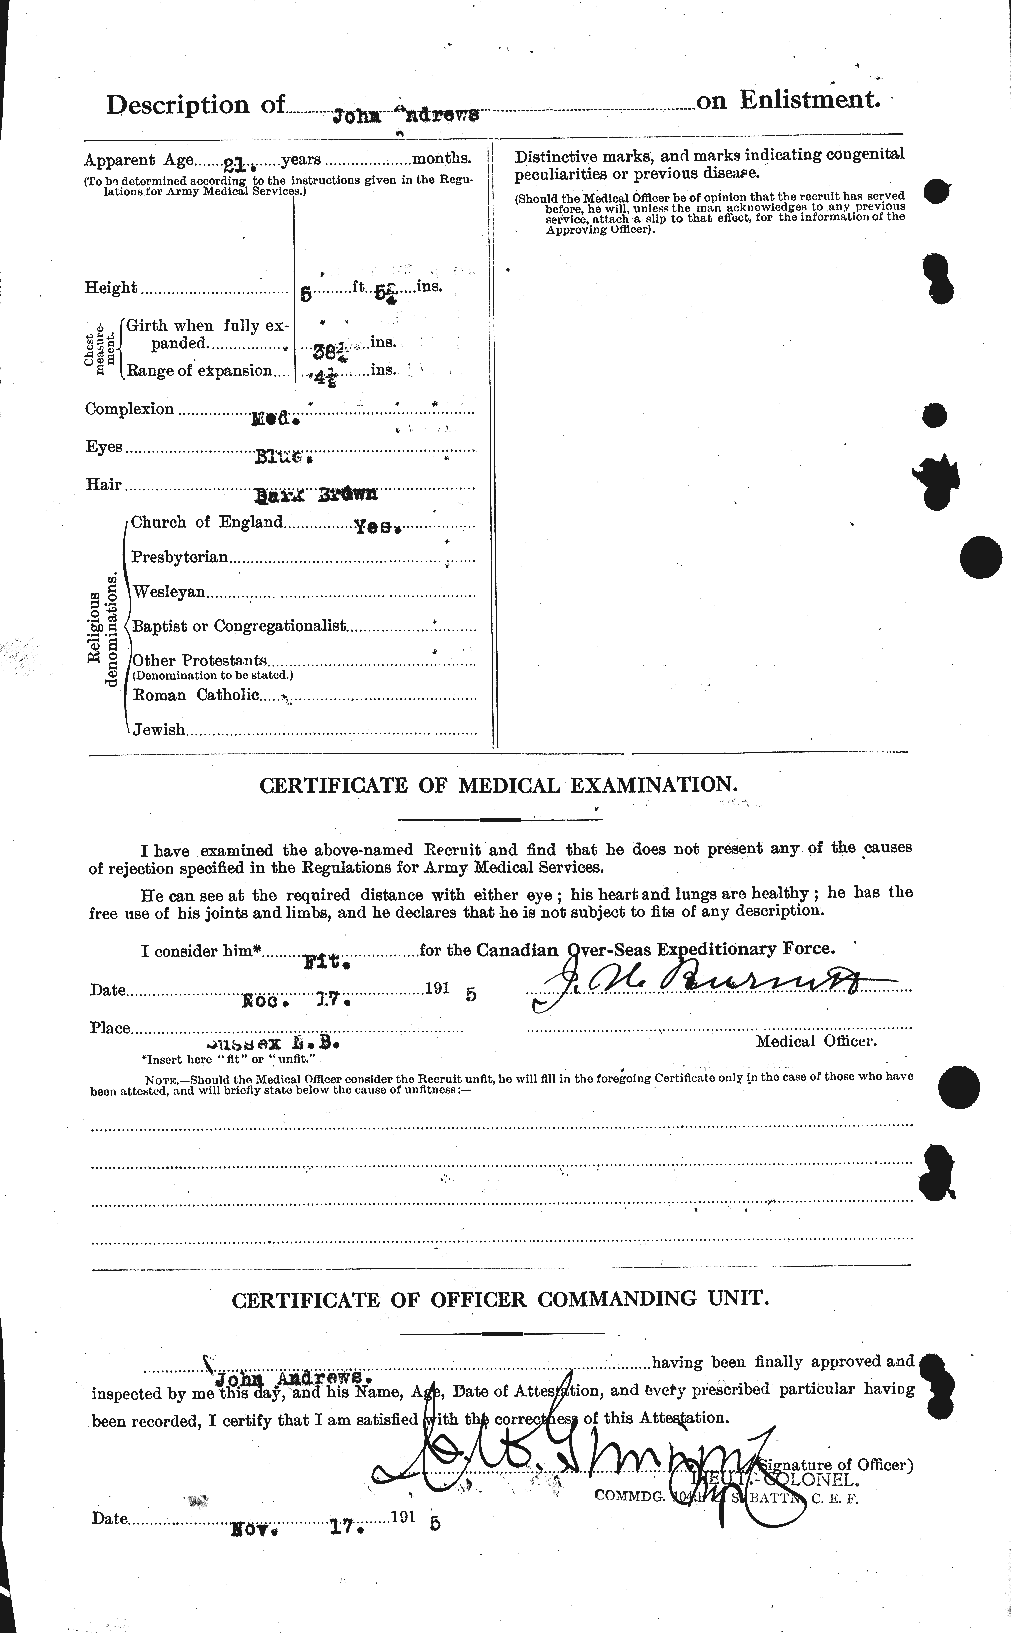 Dossiers du Personnel de la Première Guerre mondiale - CEC 210211b